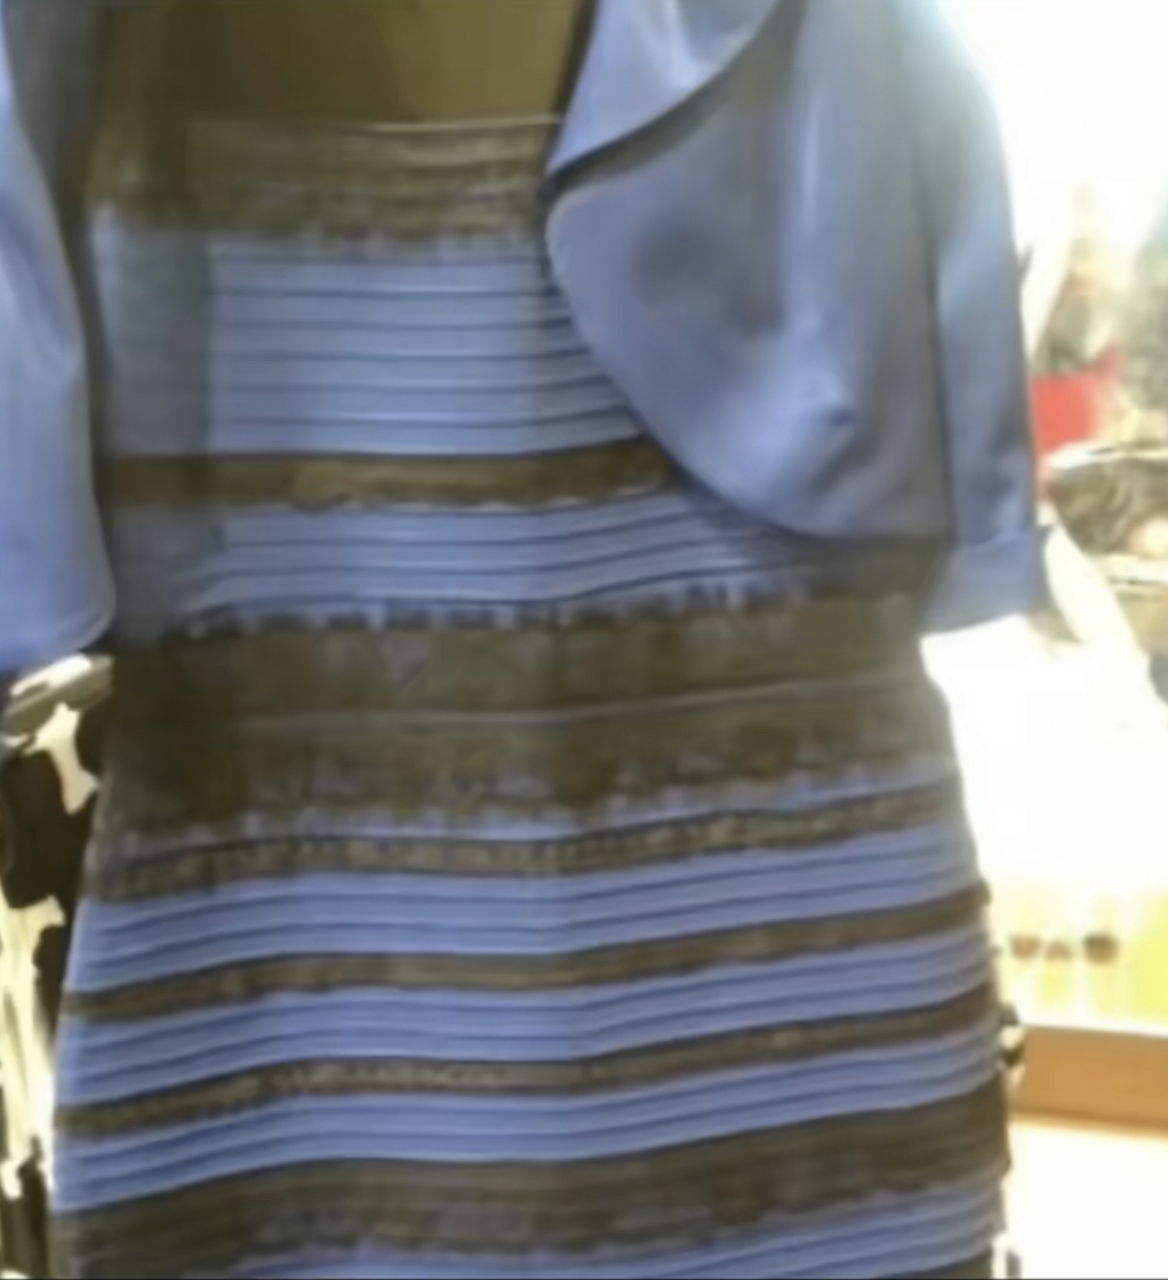 你看到的裙子是金白色还是黑蓝色,这给我整不会了[捂脸]